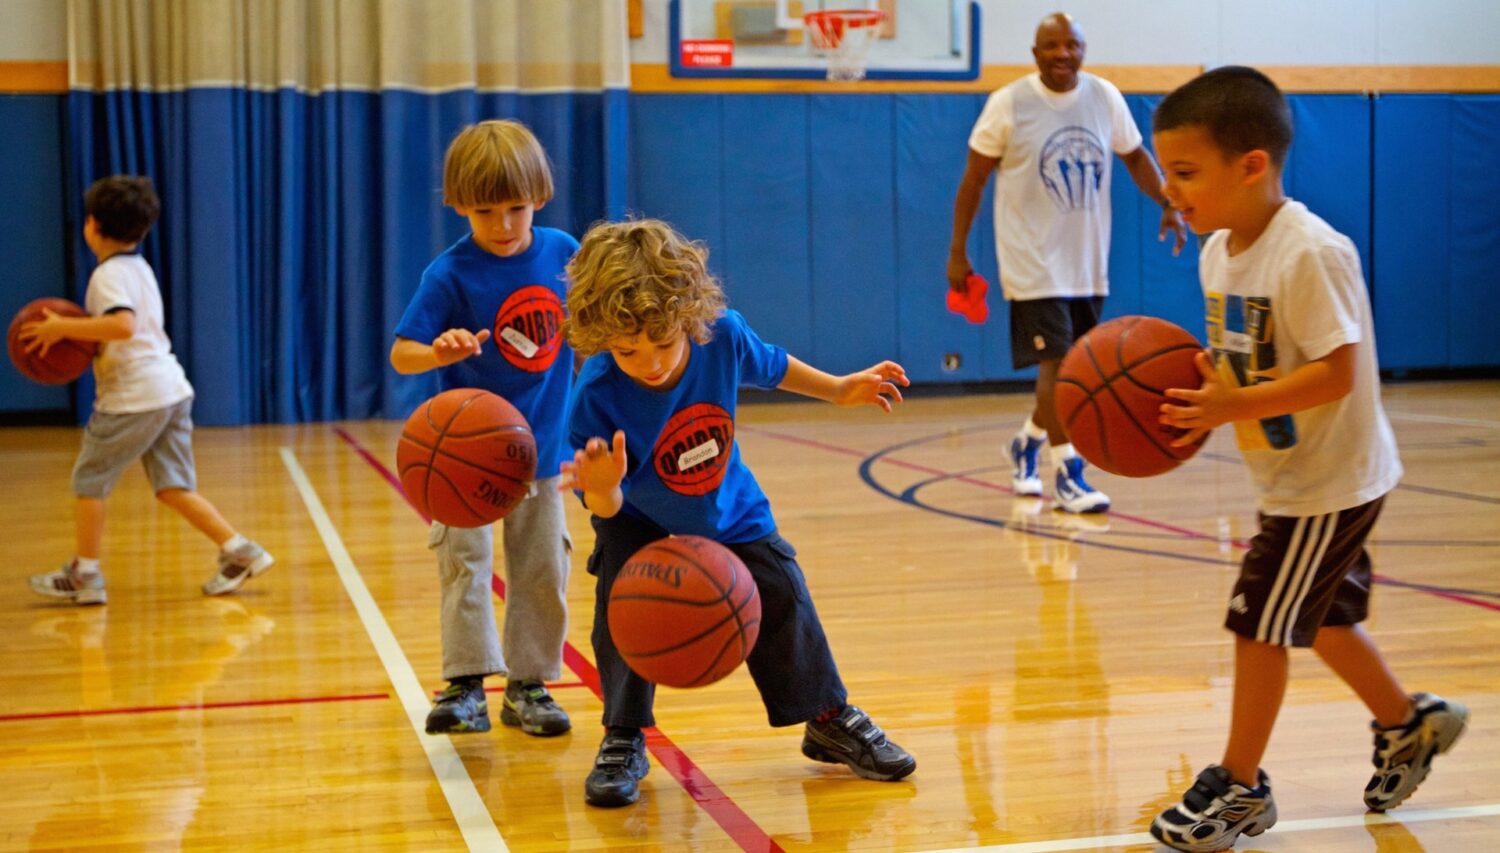 Salle de sport extensible enfants sport basket ball football